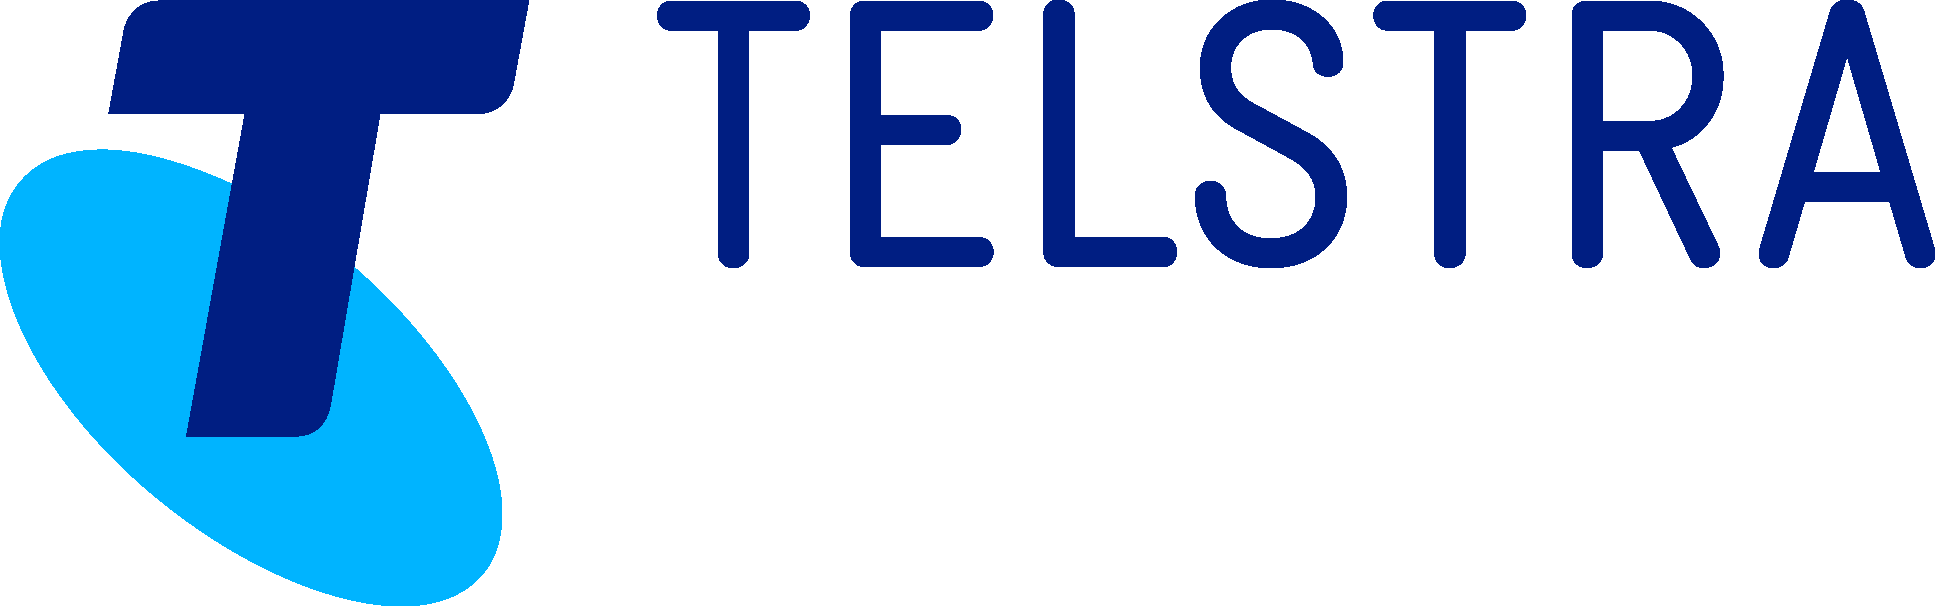 Telstra Logo png